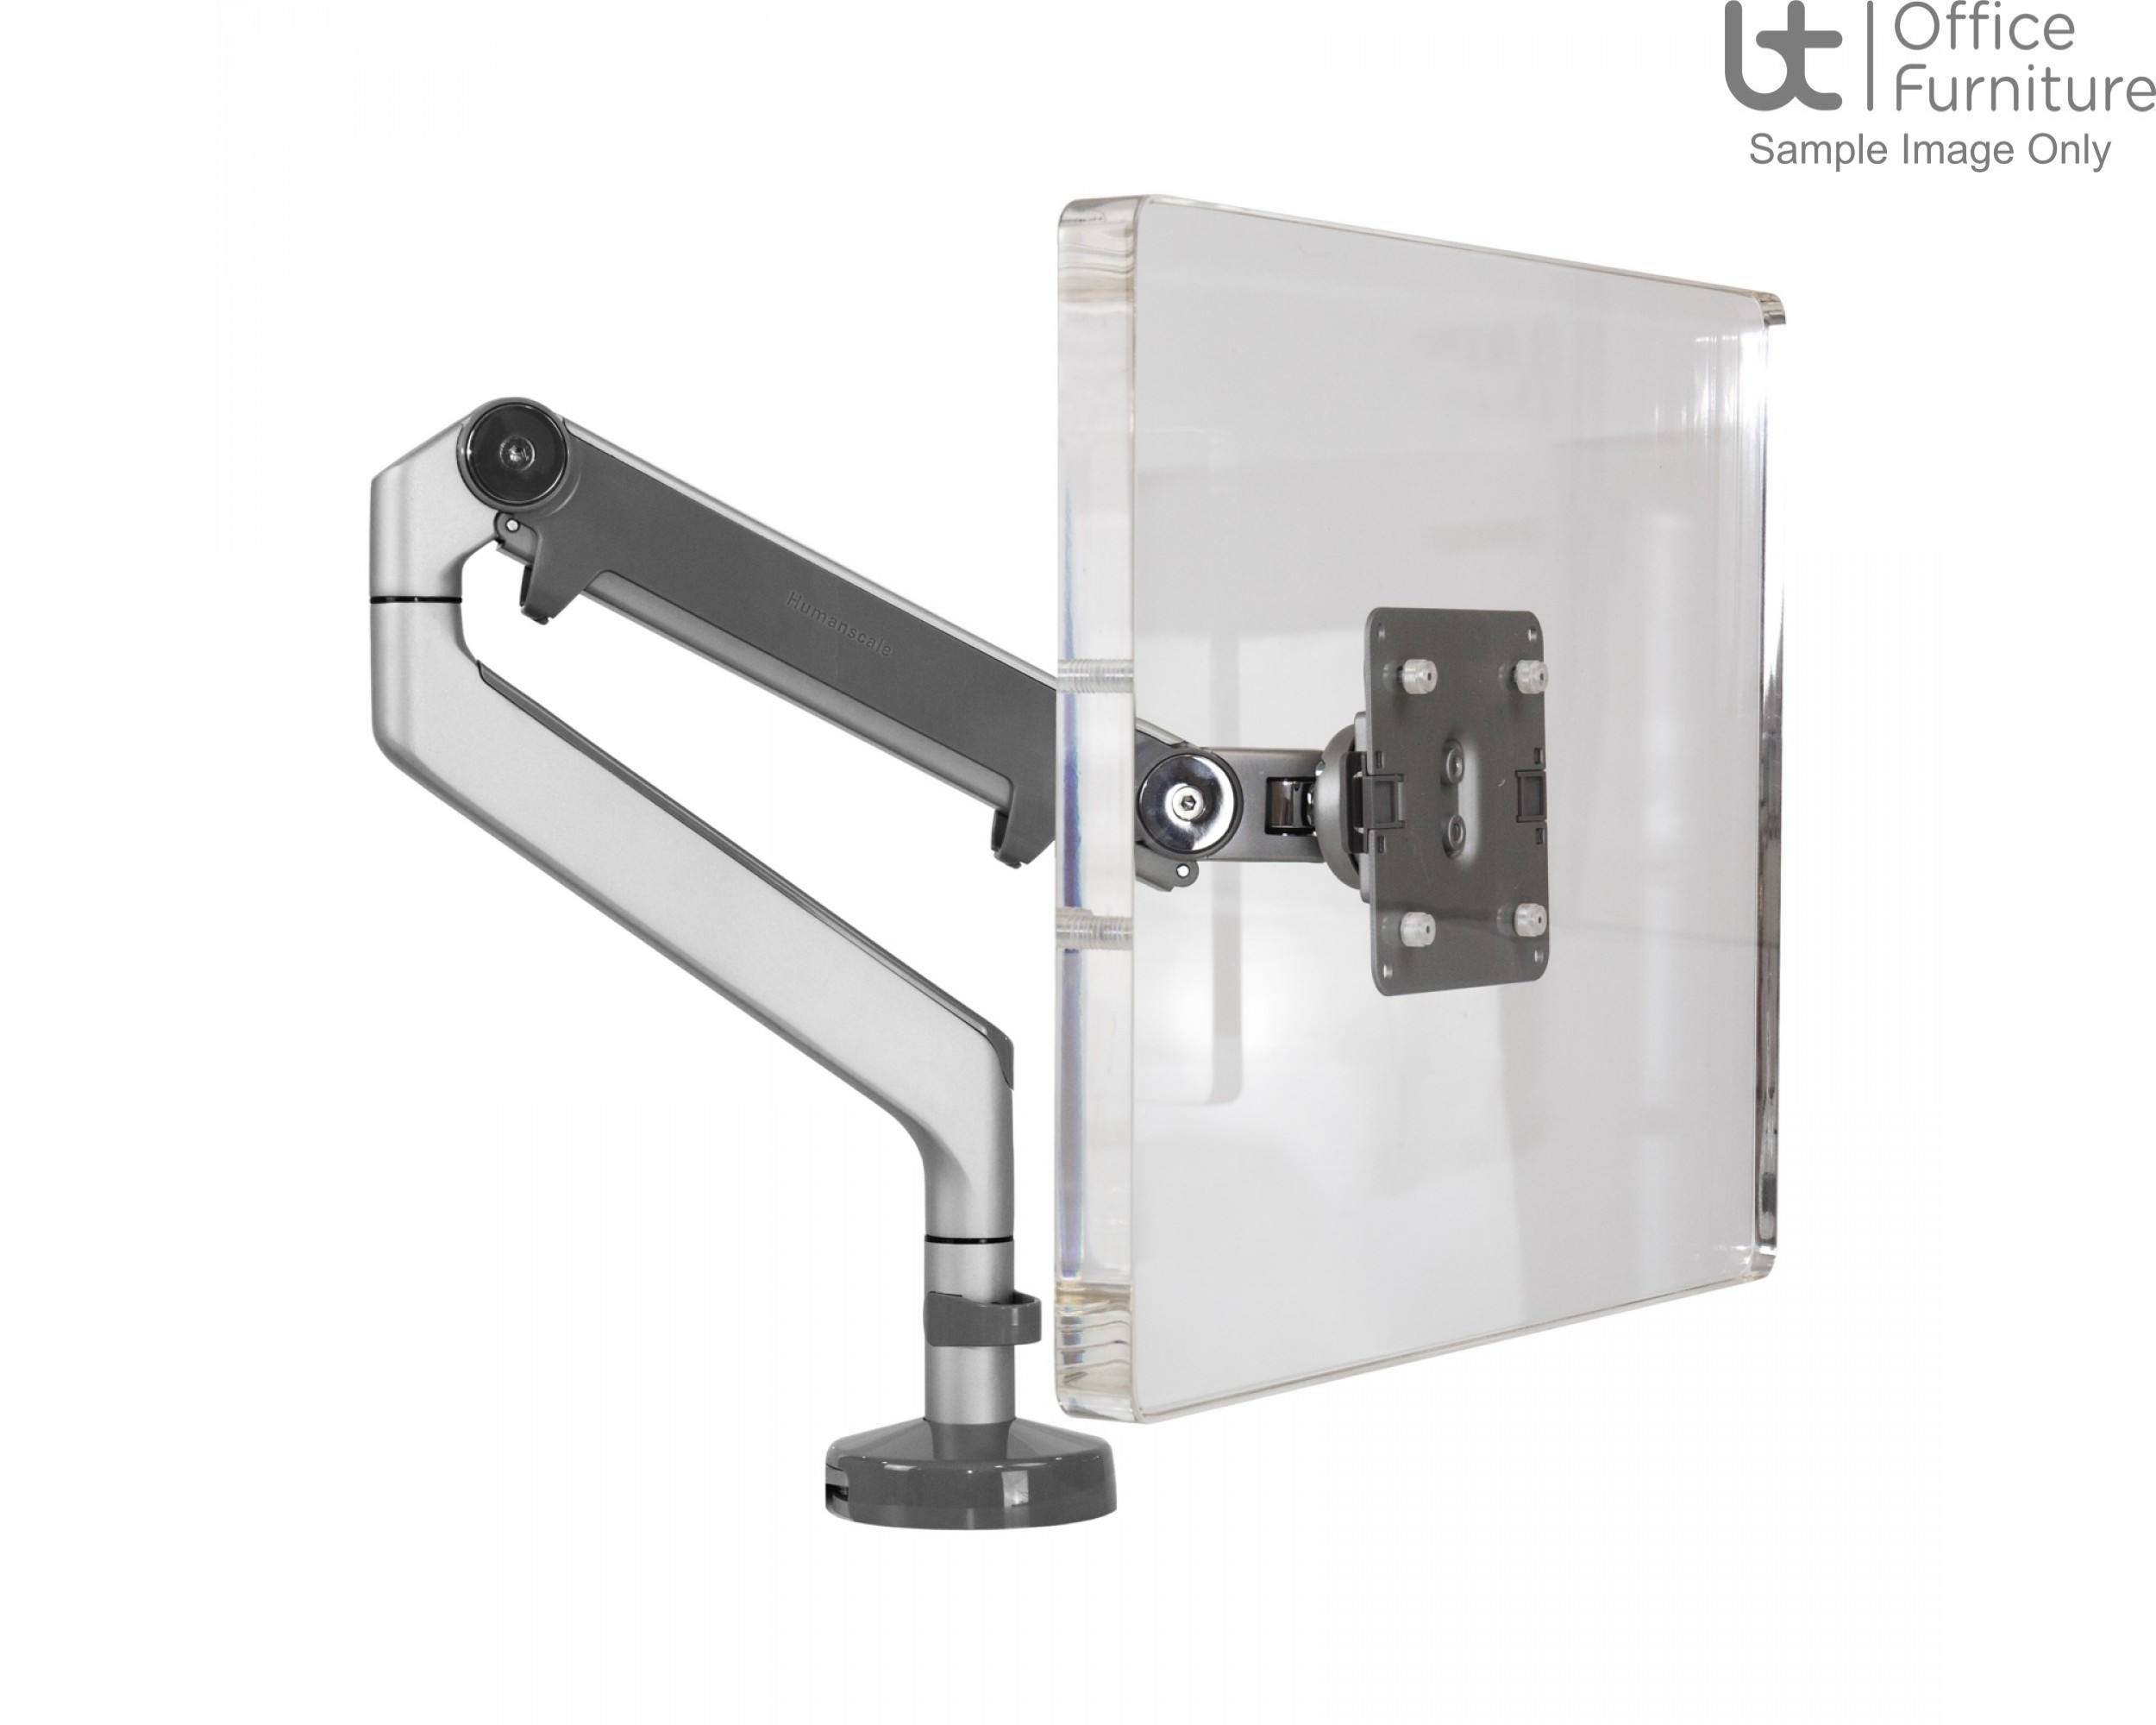 Elite Matrix Desk Accessories - TFT Screen Monitor Arm Top Fixing Clamp